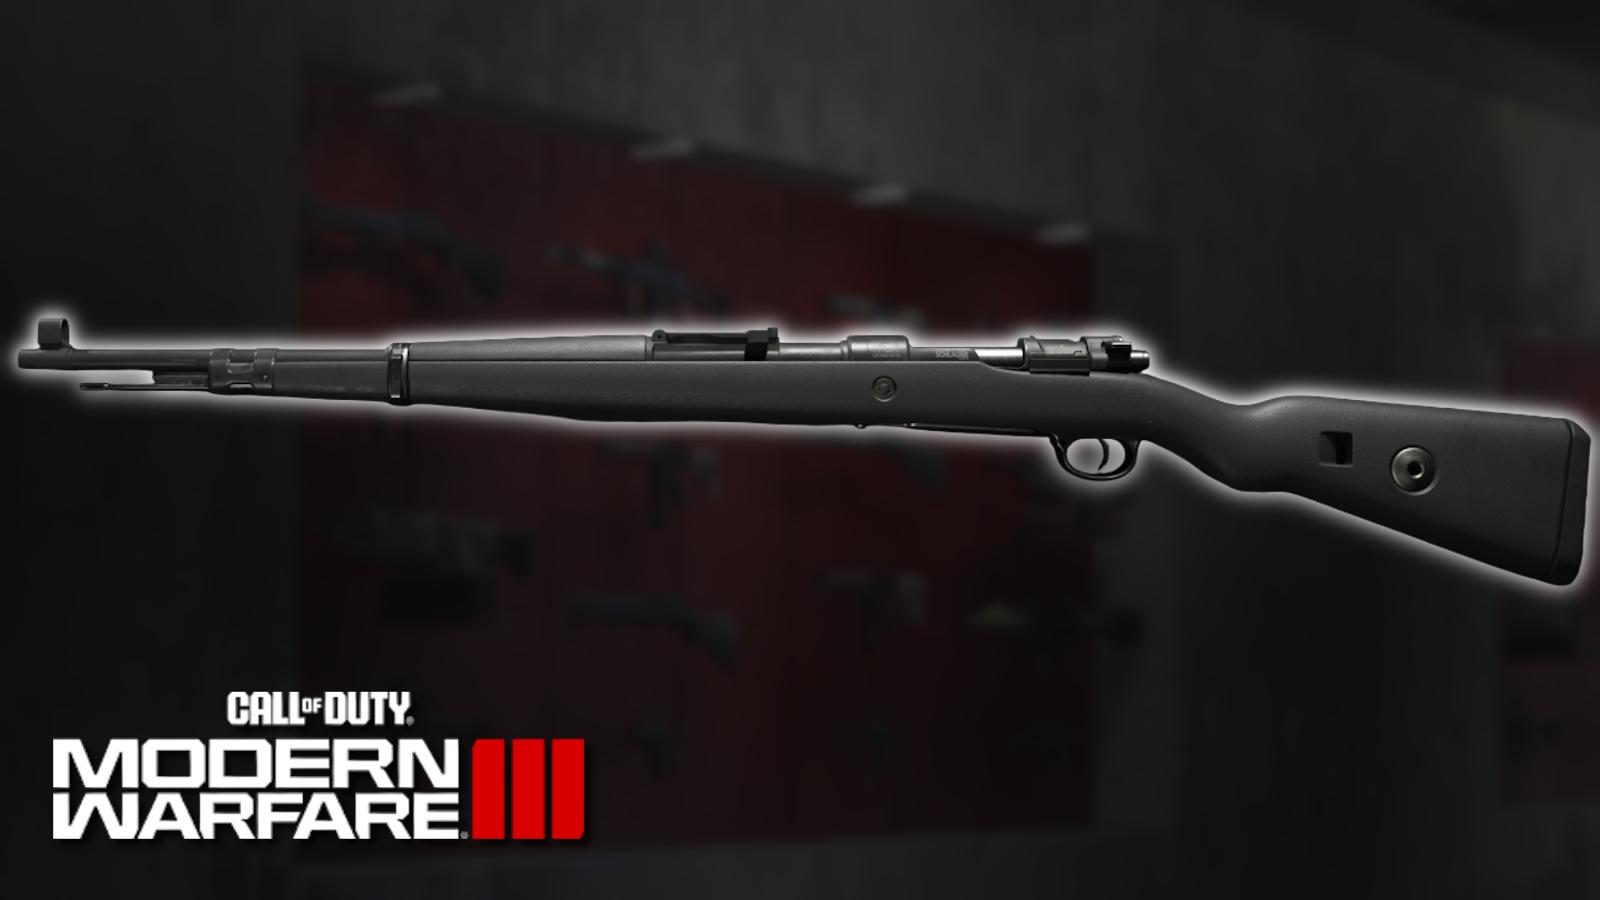 Kar98k marksman rifle in Call of Duty: Modern Warfare 3.